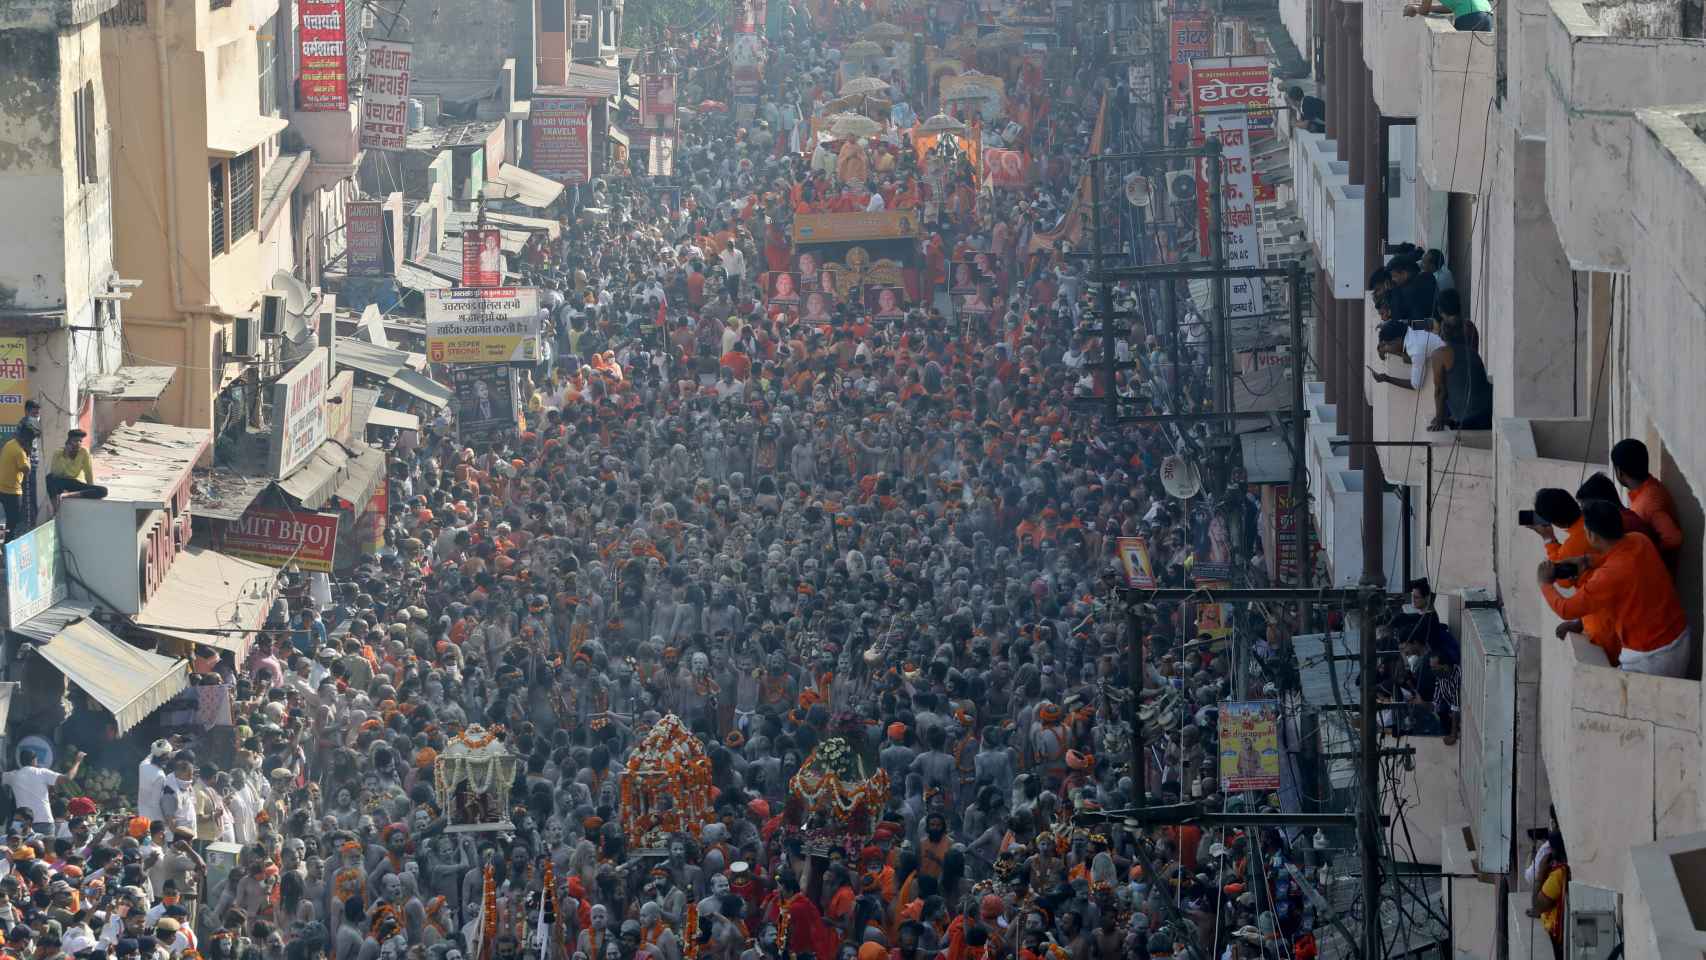 Naga Sadhus participan en una procesión antes de bañarse en el Ganges durante el Kumbh Mela.